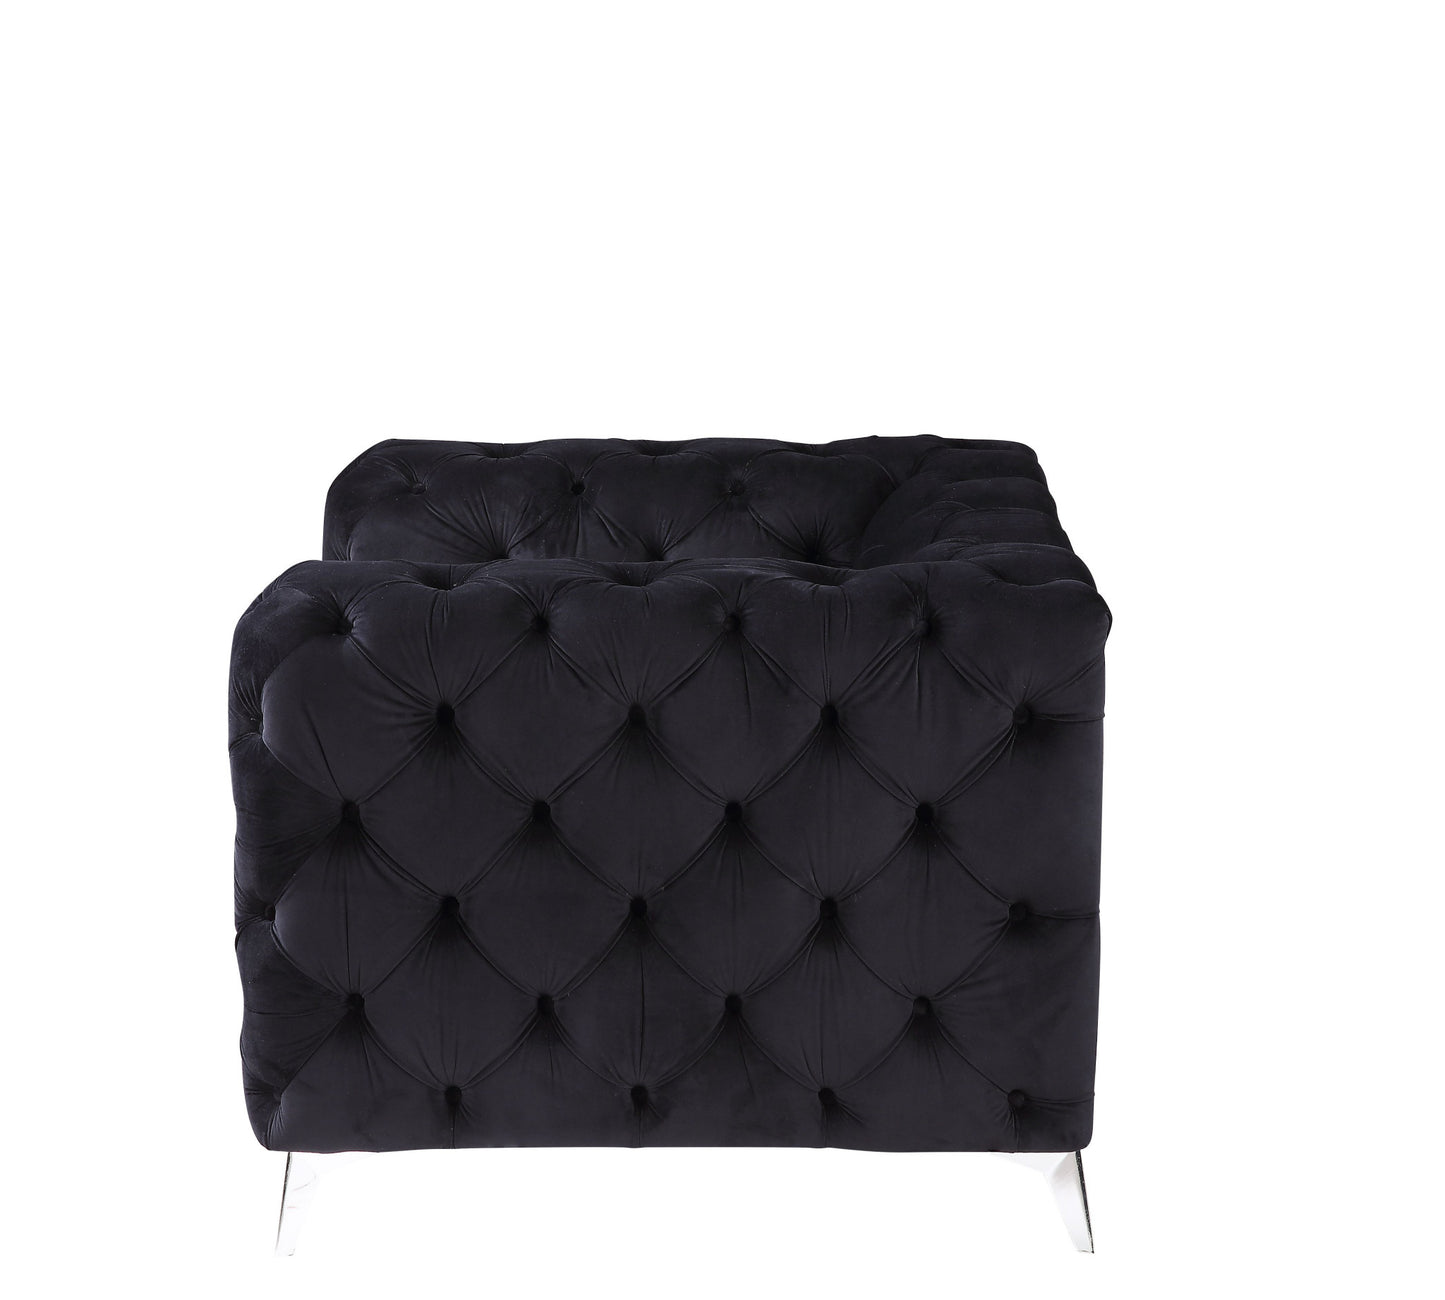 46" Black Velvet And Chrome Tufted Arm Chair